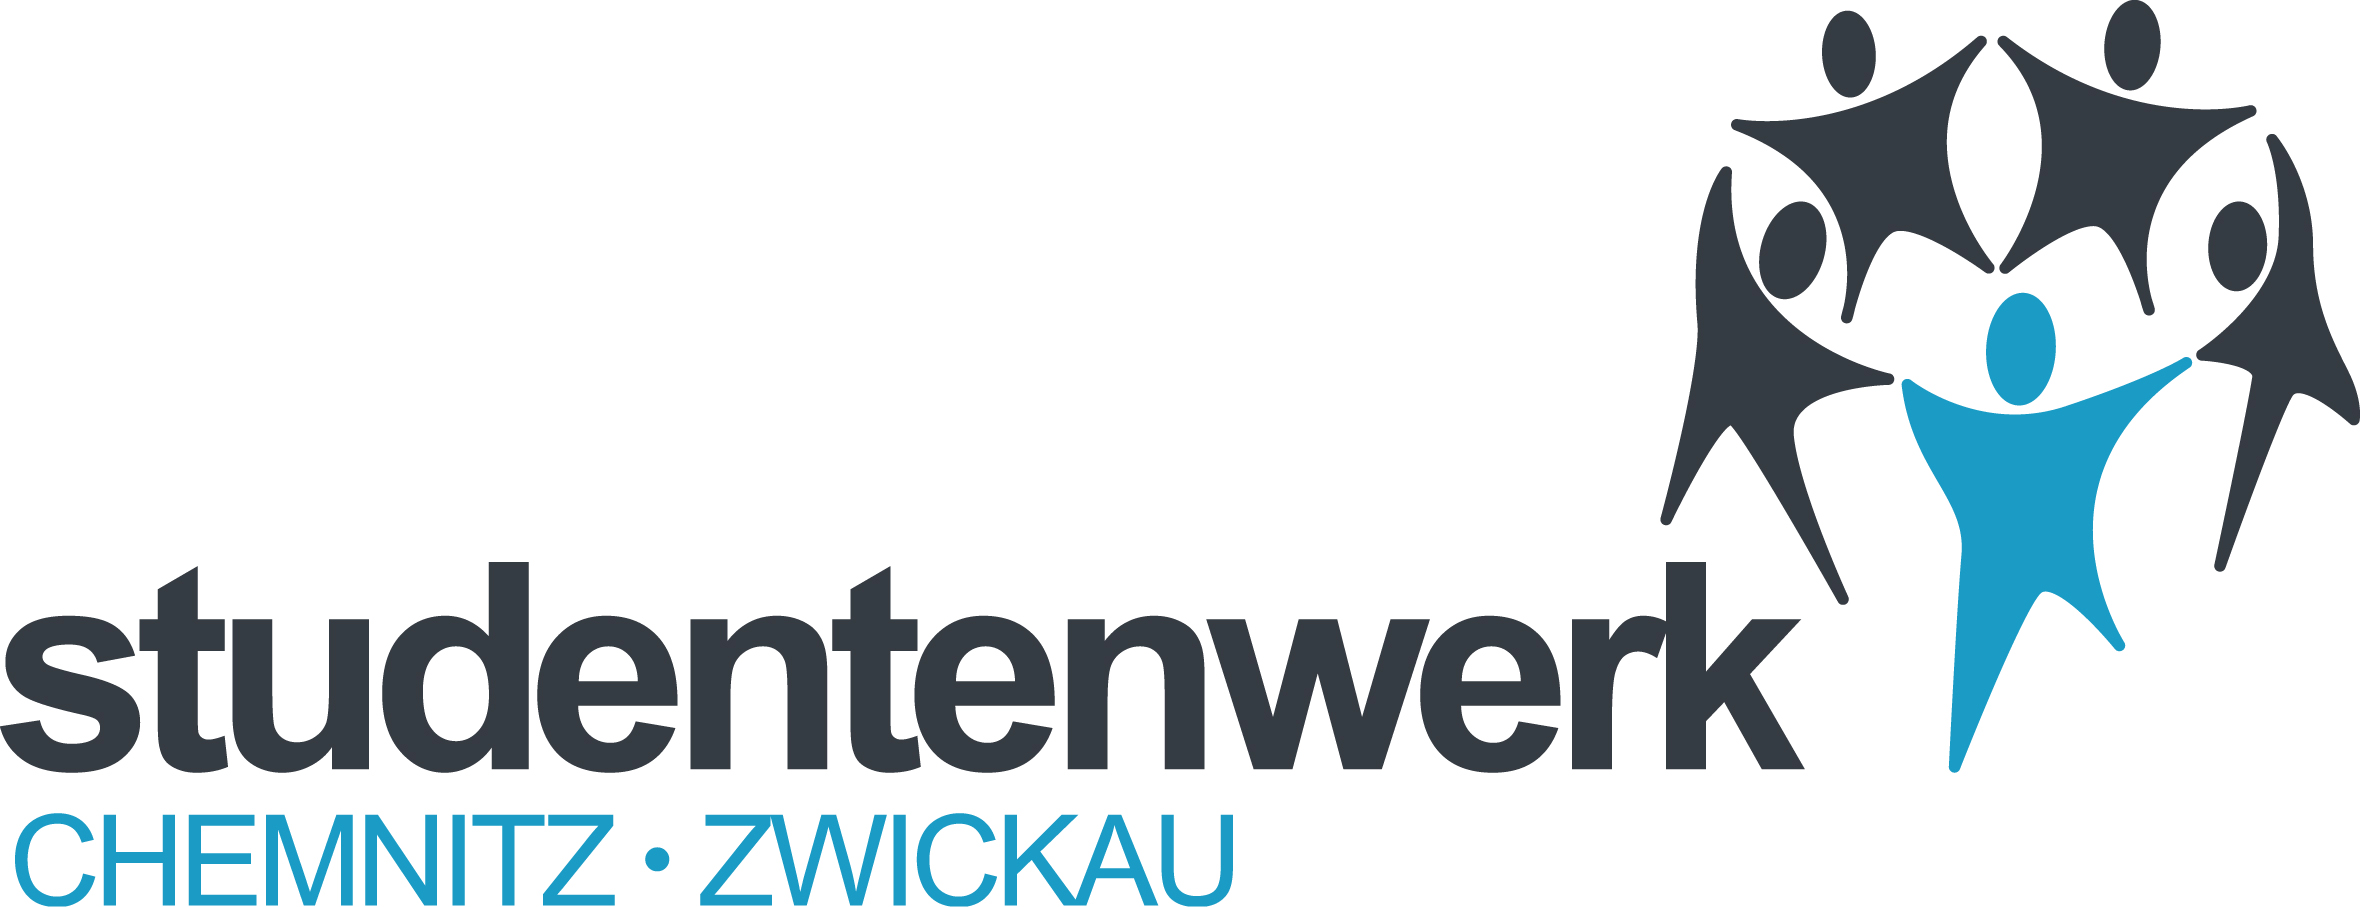 Logo of the Student Union Chemnitz-Zwickau